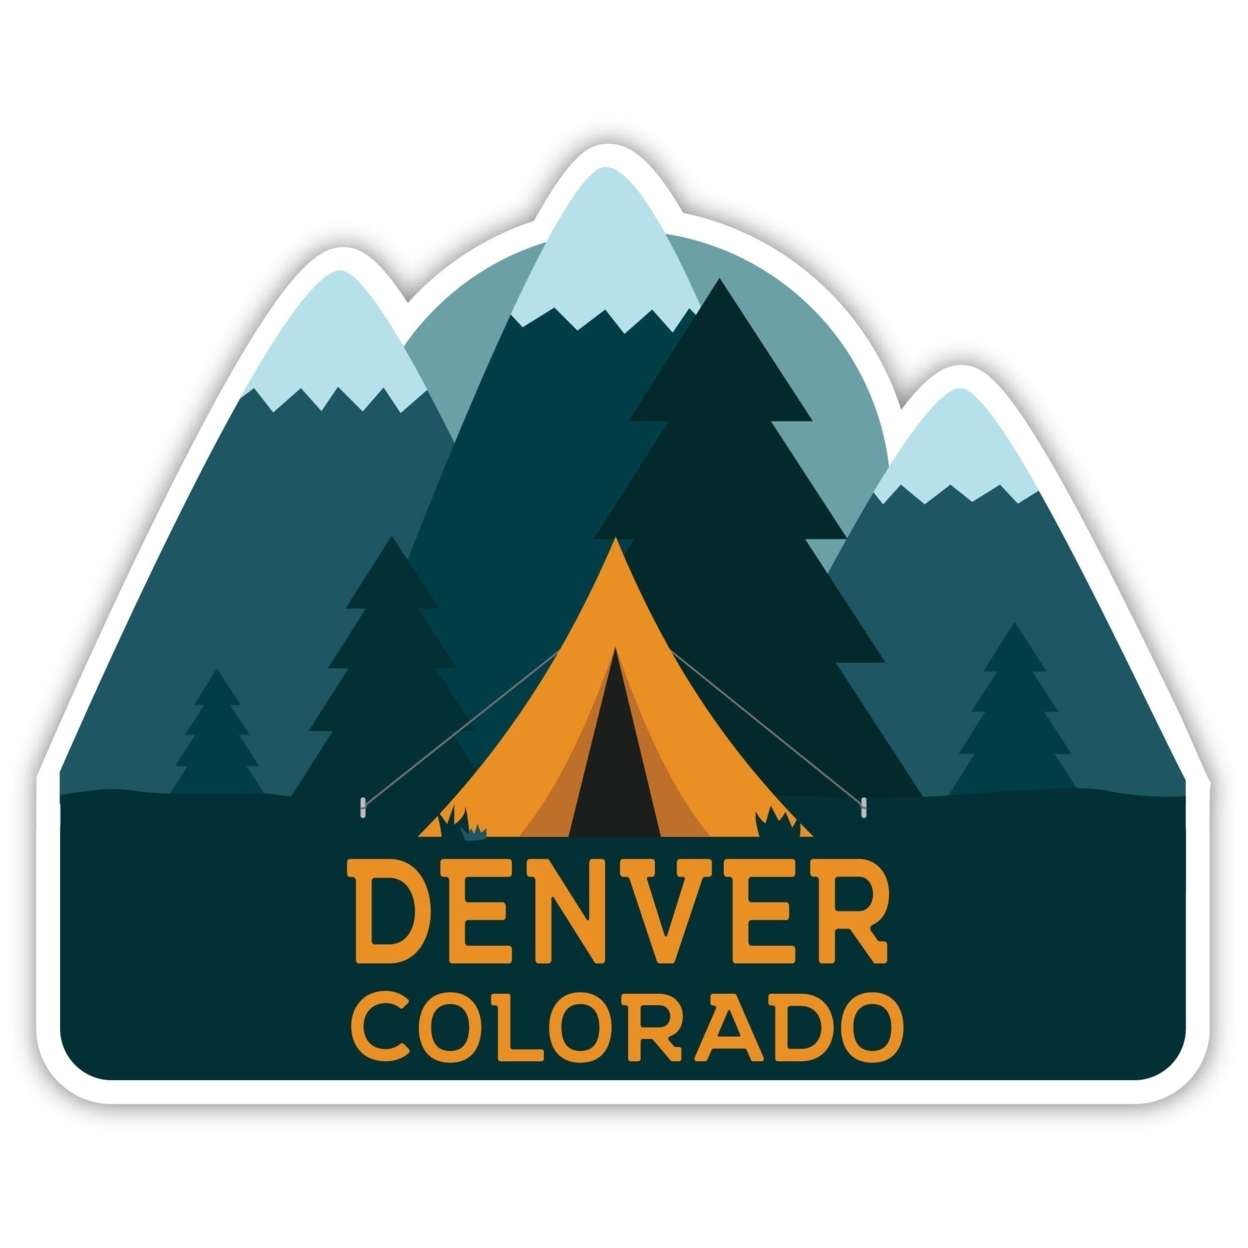 Denver Colorado Souvenir Decorative Stickers (Choose Theme And Size) - Single Unit, 4-Inch, Tent